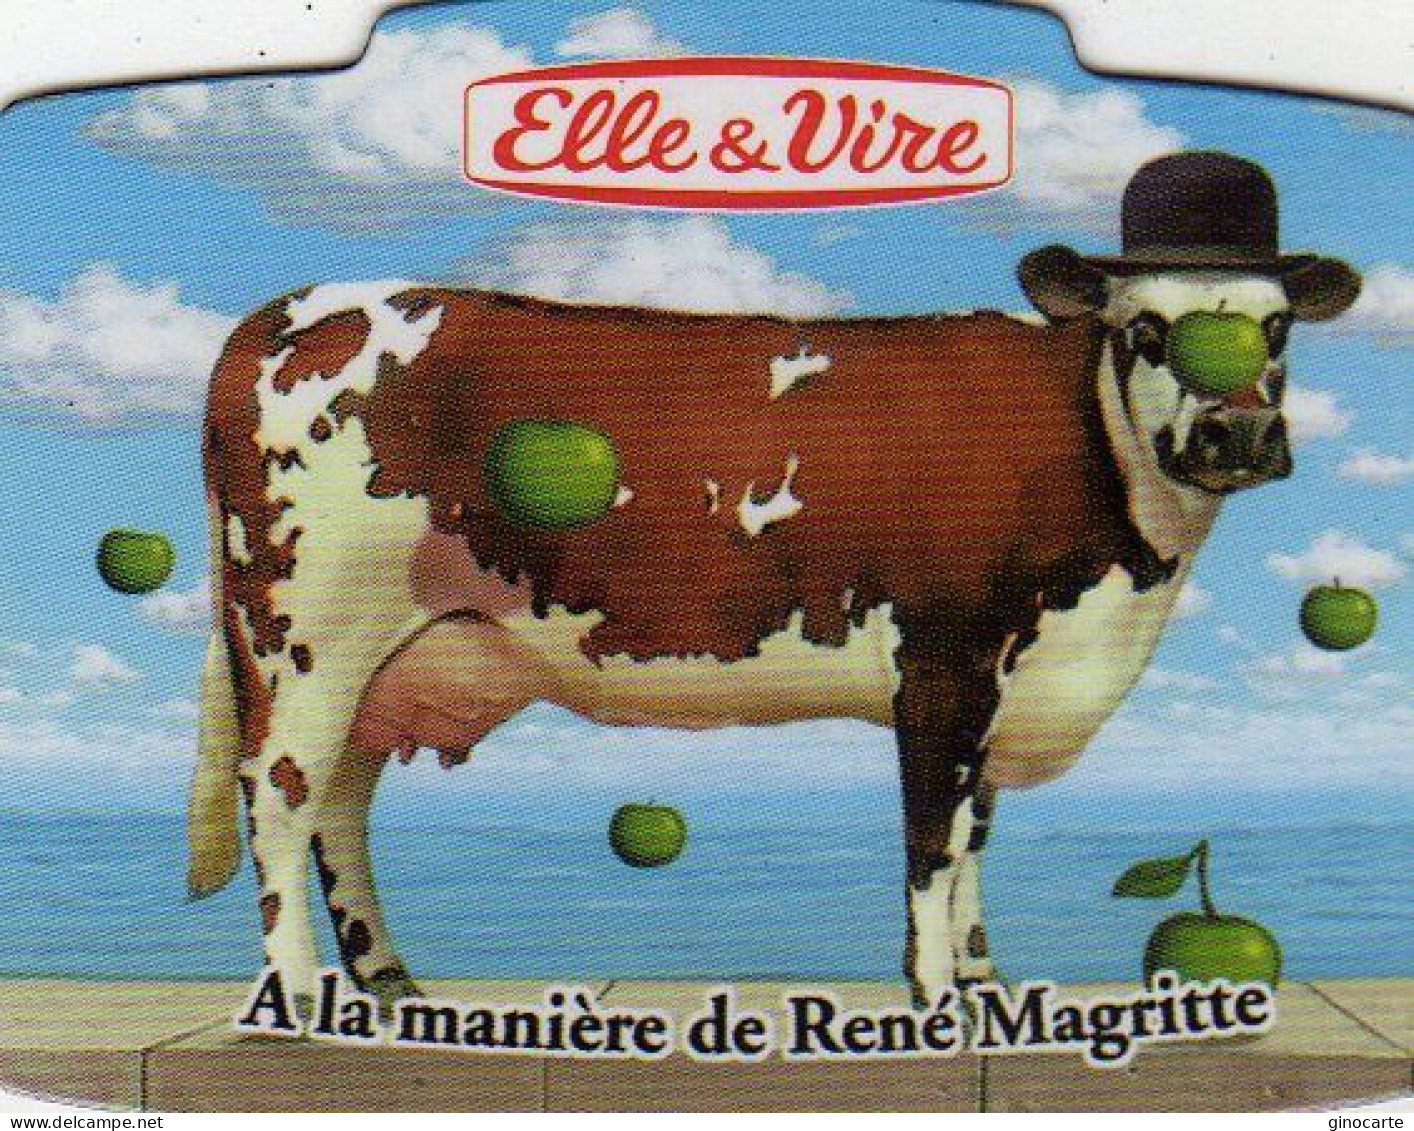 Magnets Magnet Elle Et Vire Vache à La Maniere De René Magritte - Tourismus